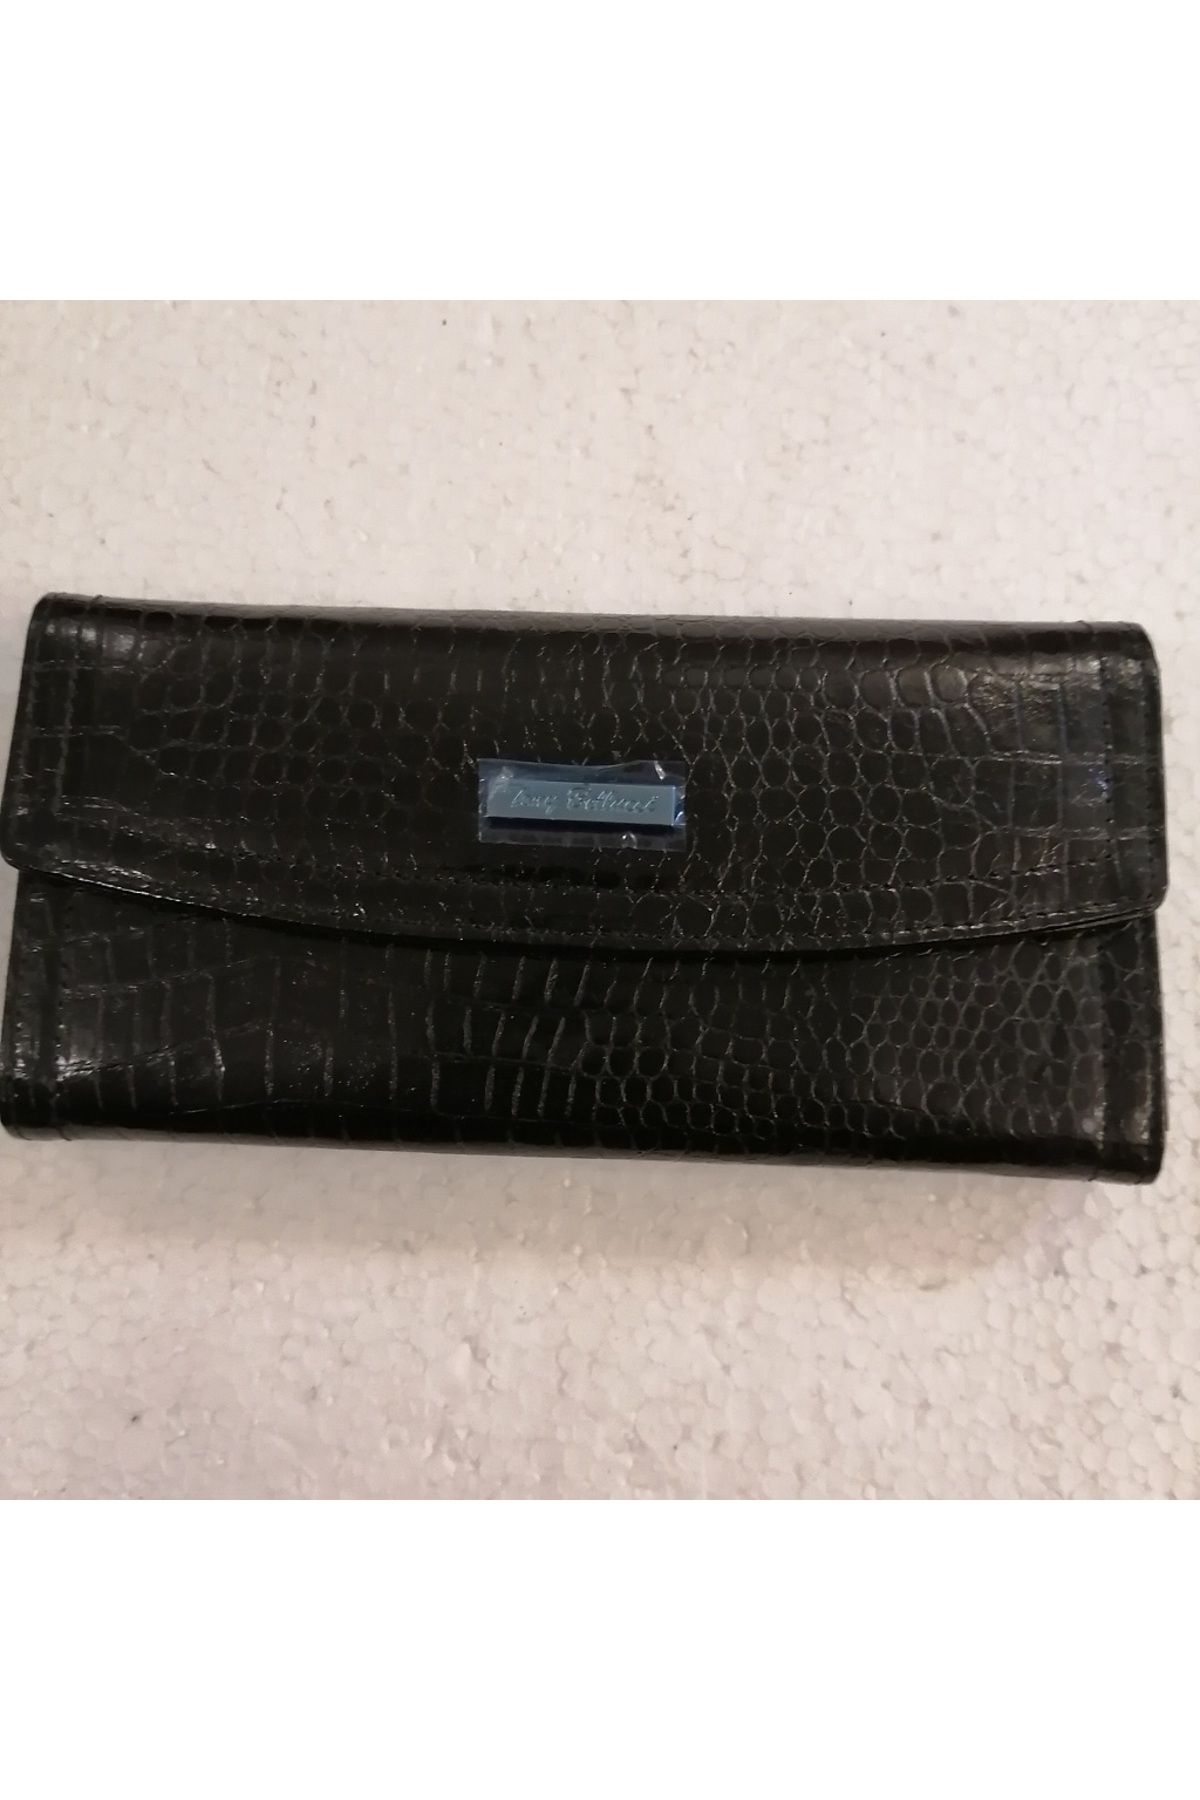 Tony Bellucci Kadın hakiki deri siyah kroko baskı 3 geniş 1 fermuarlı 1 gizli 10 kart gözlü çıtçıtlı cüzdan